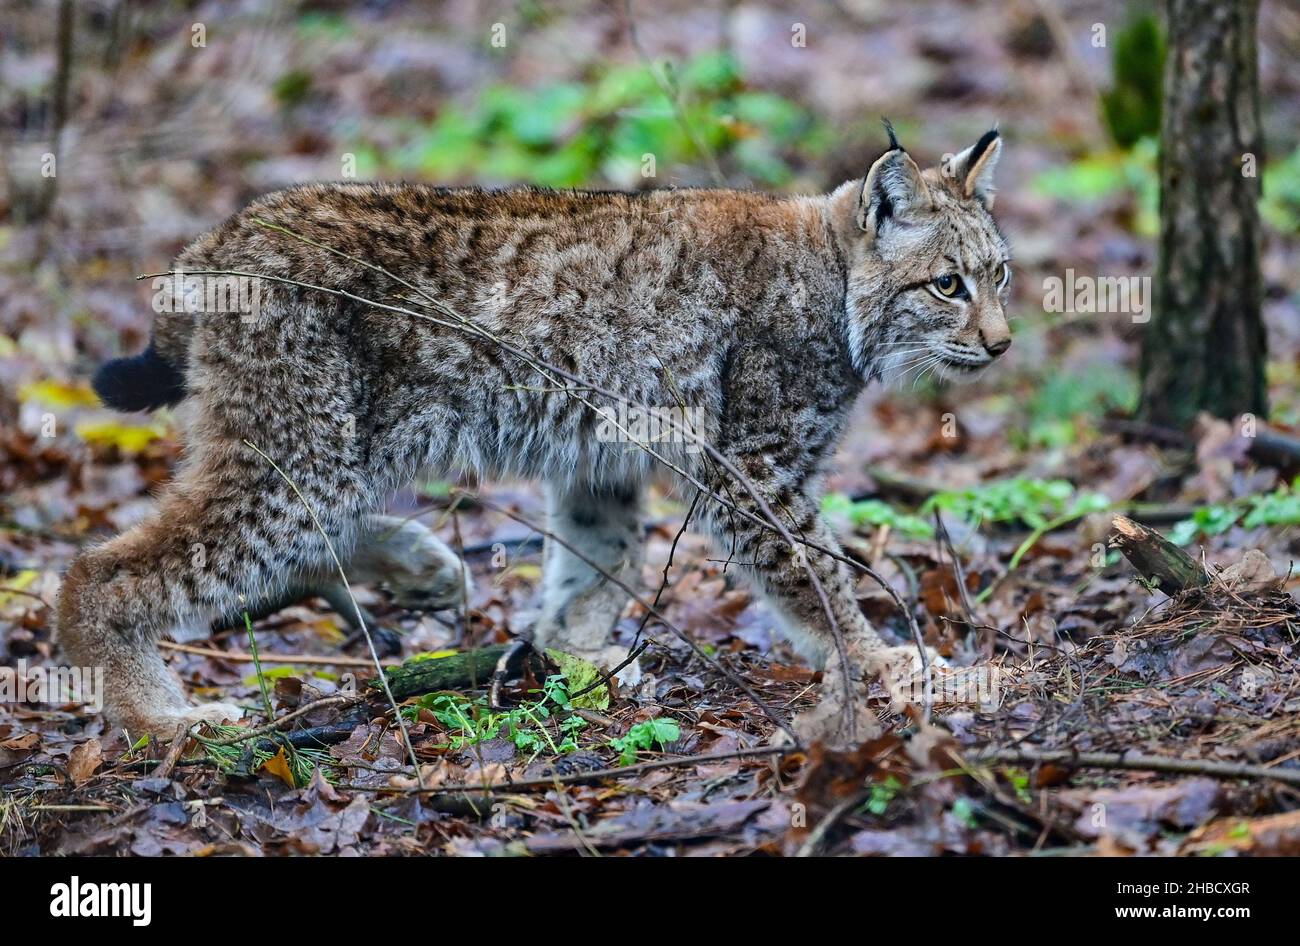 18 décembre 2021, Brandebourg, Groß Schönebeck : un lynx vieux de six mois traverse son enclos dans le parc animalier de Schorfheide.Il n'a pas encore de nom, mais le directeur du parc animalier Heyter penche vers « Ludwig ».La deuxième année de Corona a été très réussie avec la progéniture dans la réserve naturelle de Schorfheide.La progéniture de Lynx vient chaque année, dit Heyter.Selon cela, le parc sauvage dans le district de Barnim a de l'expérience avec les chats sauvages - lynx sont à la maison dans le parc depuis 14 ans.Le plus jeune lynx est né en juin de cette année et grandit avec sa mothe Banque D'Images